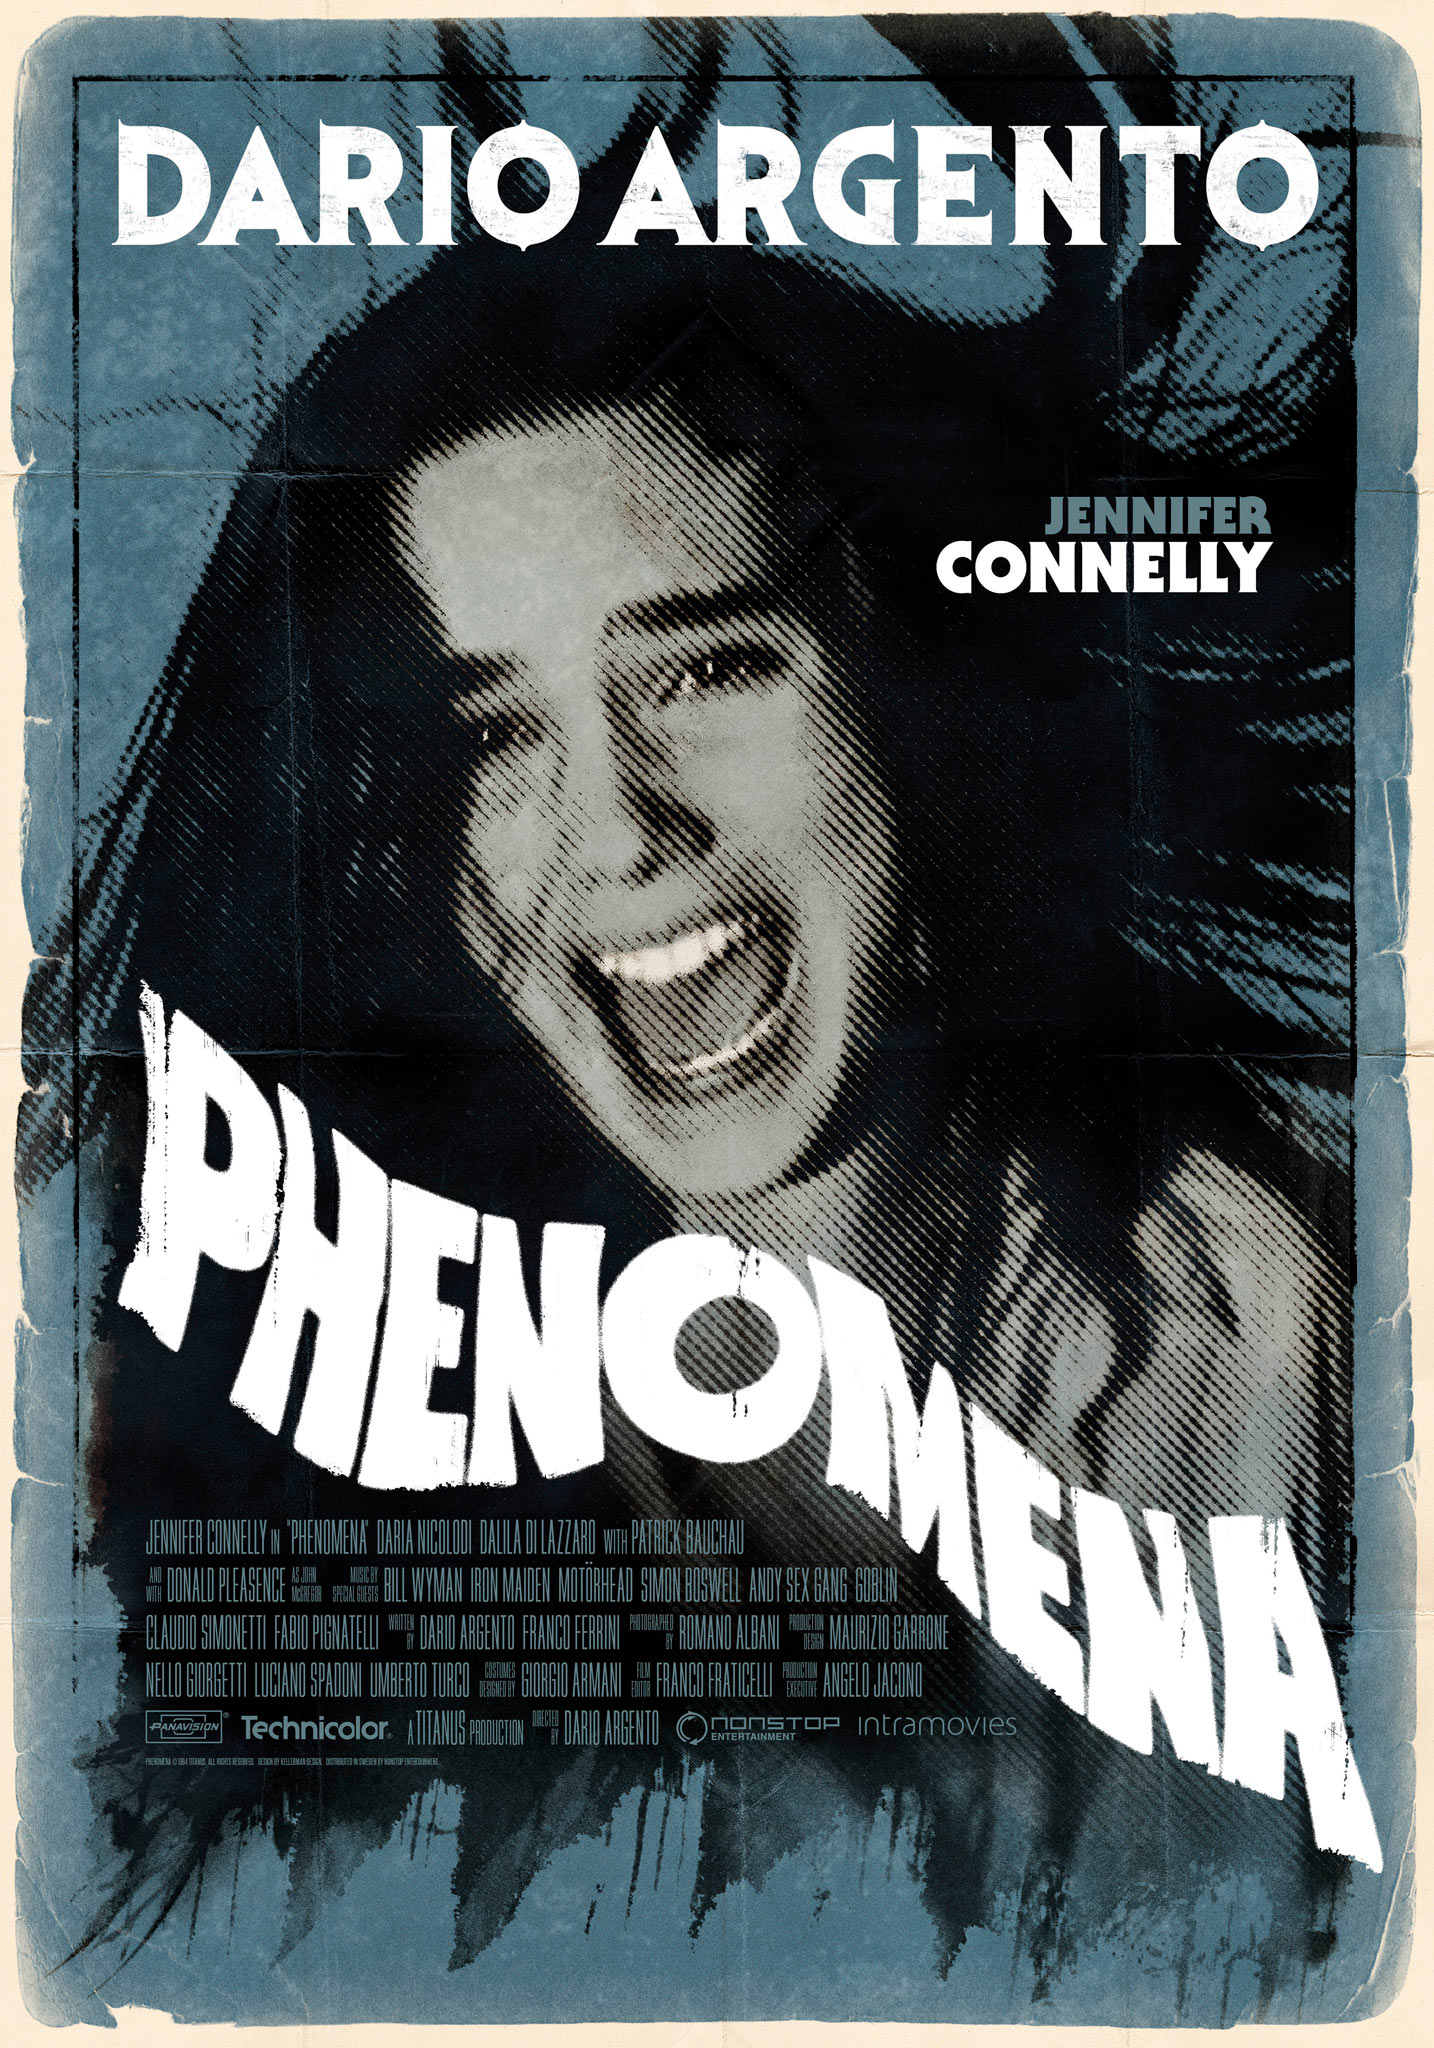 Phenomena (1985) theatrical onesheet